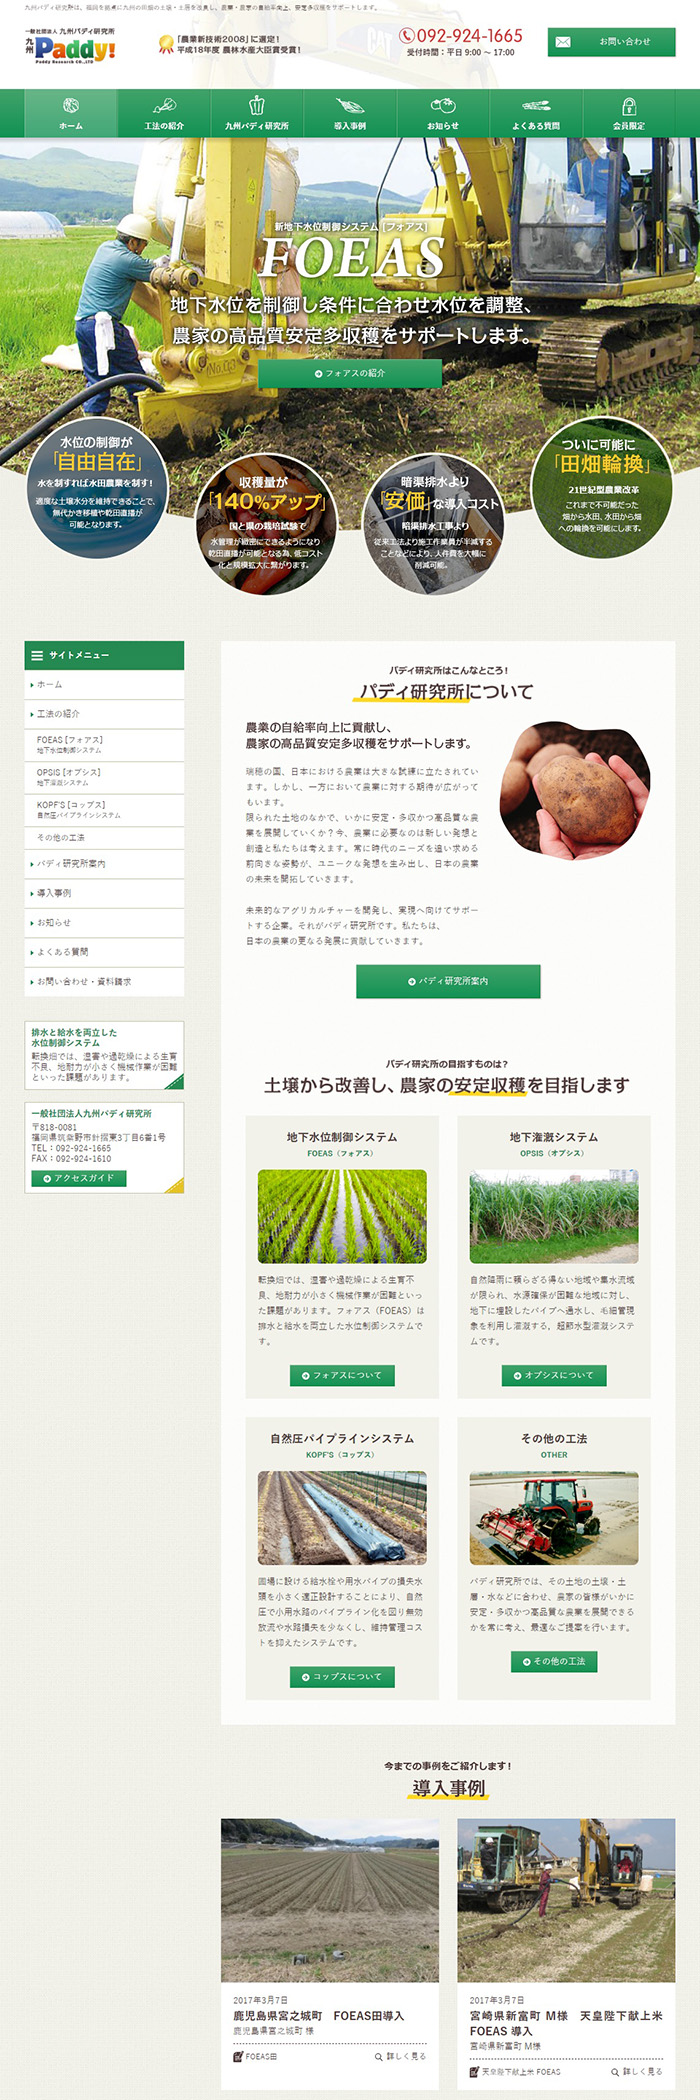 一般社団法人九州パディ研究所様ホームページ制作実績 デスクトップイメージ